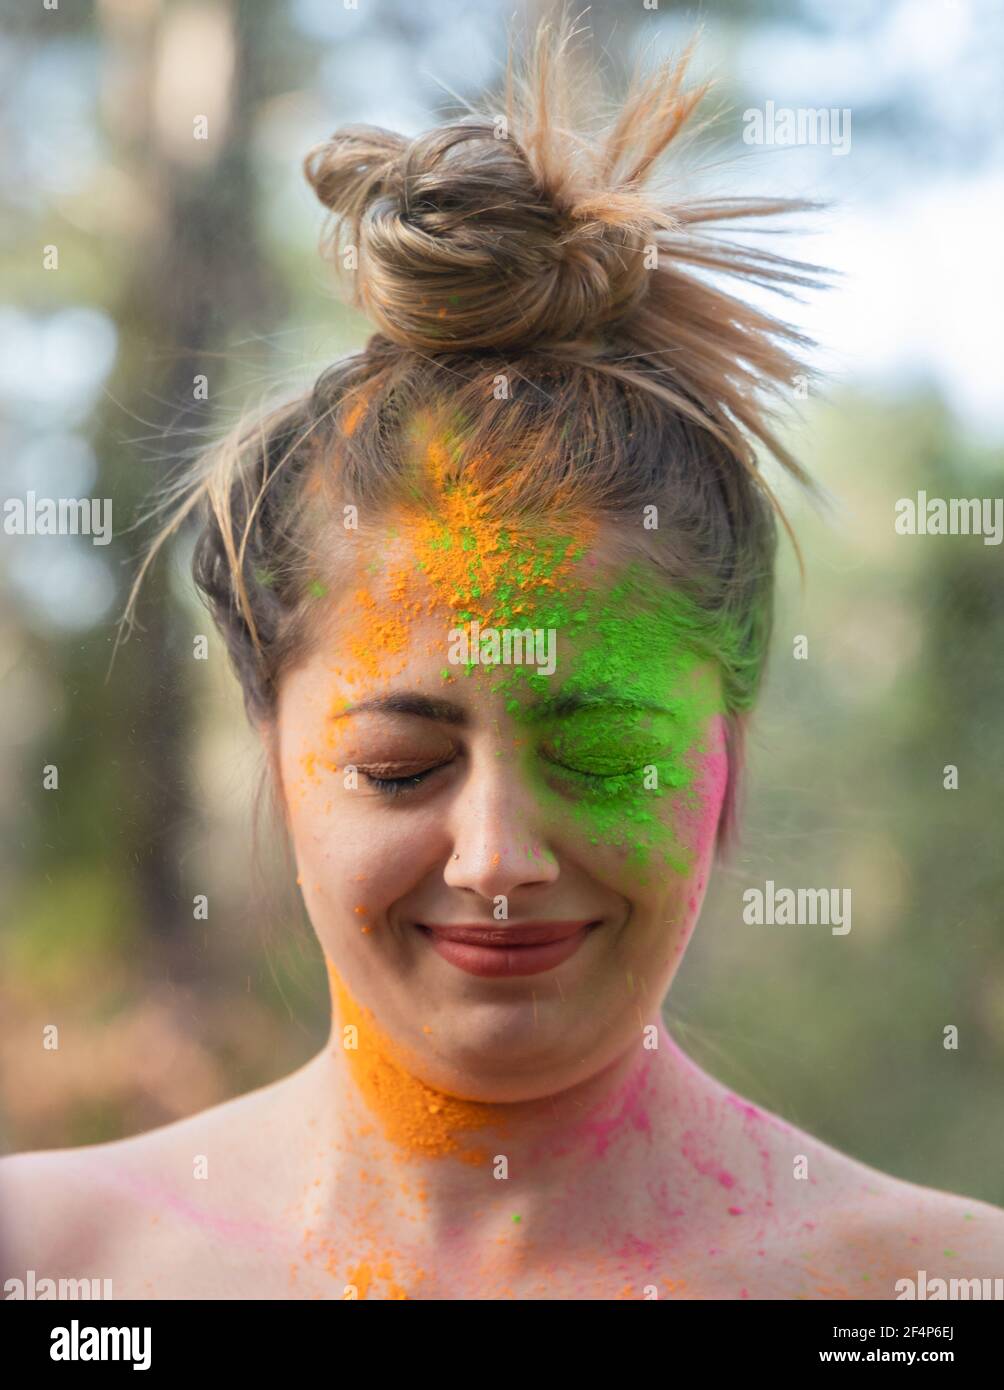 Giovane donna attraente al festival di colori Holi di pitture nel parco. Divertirsi all'aperto. Polvere multicolore colora il viso. Primo piano verticale. Foto Stock